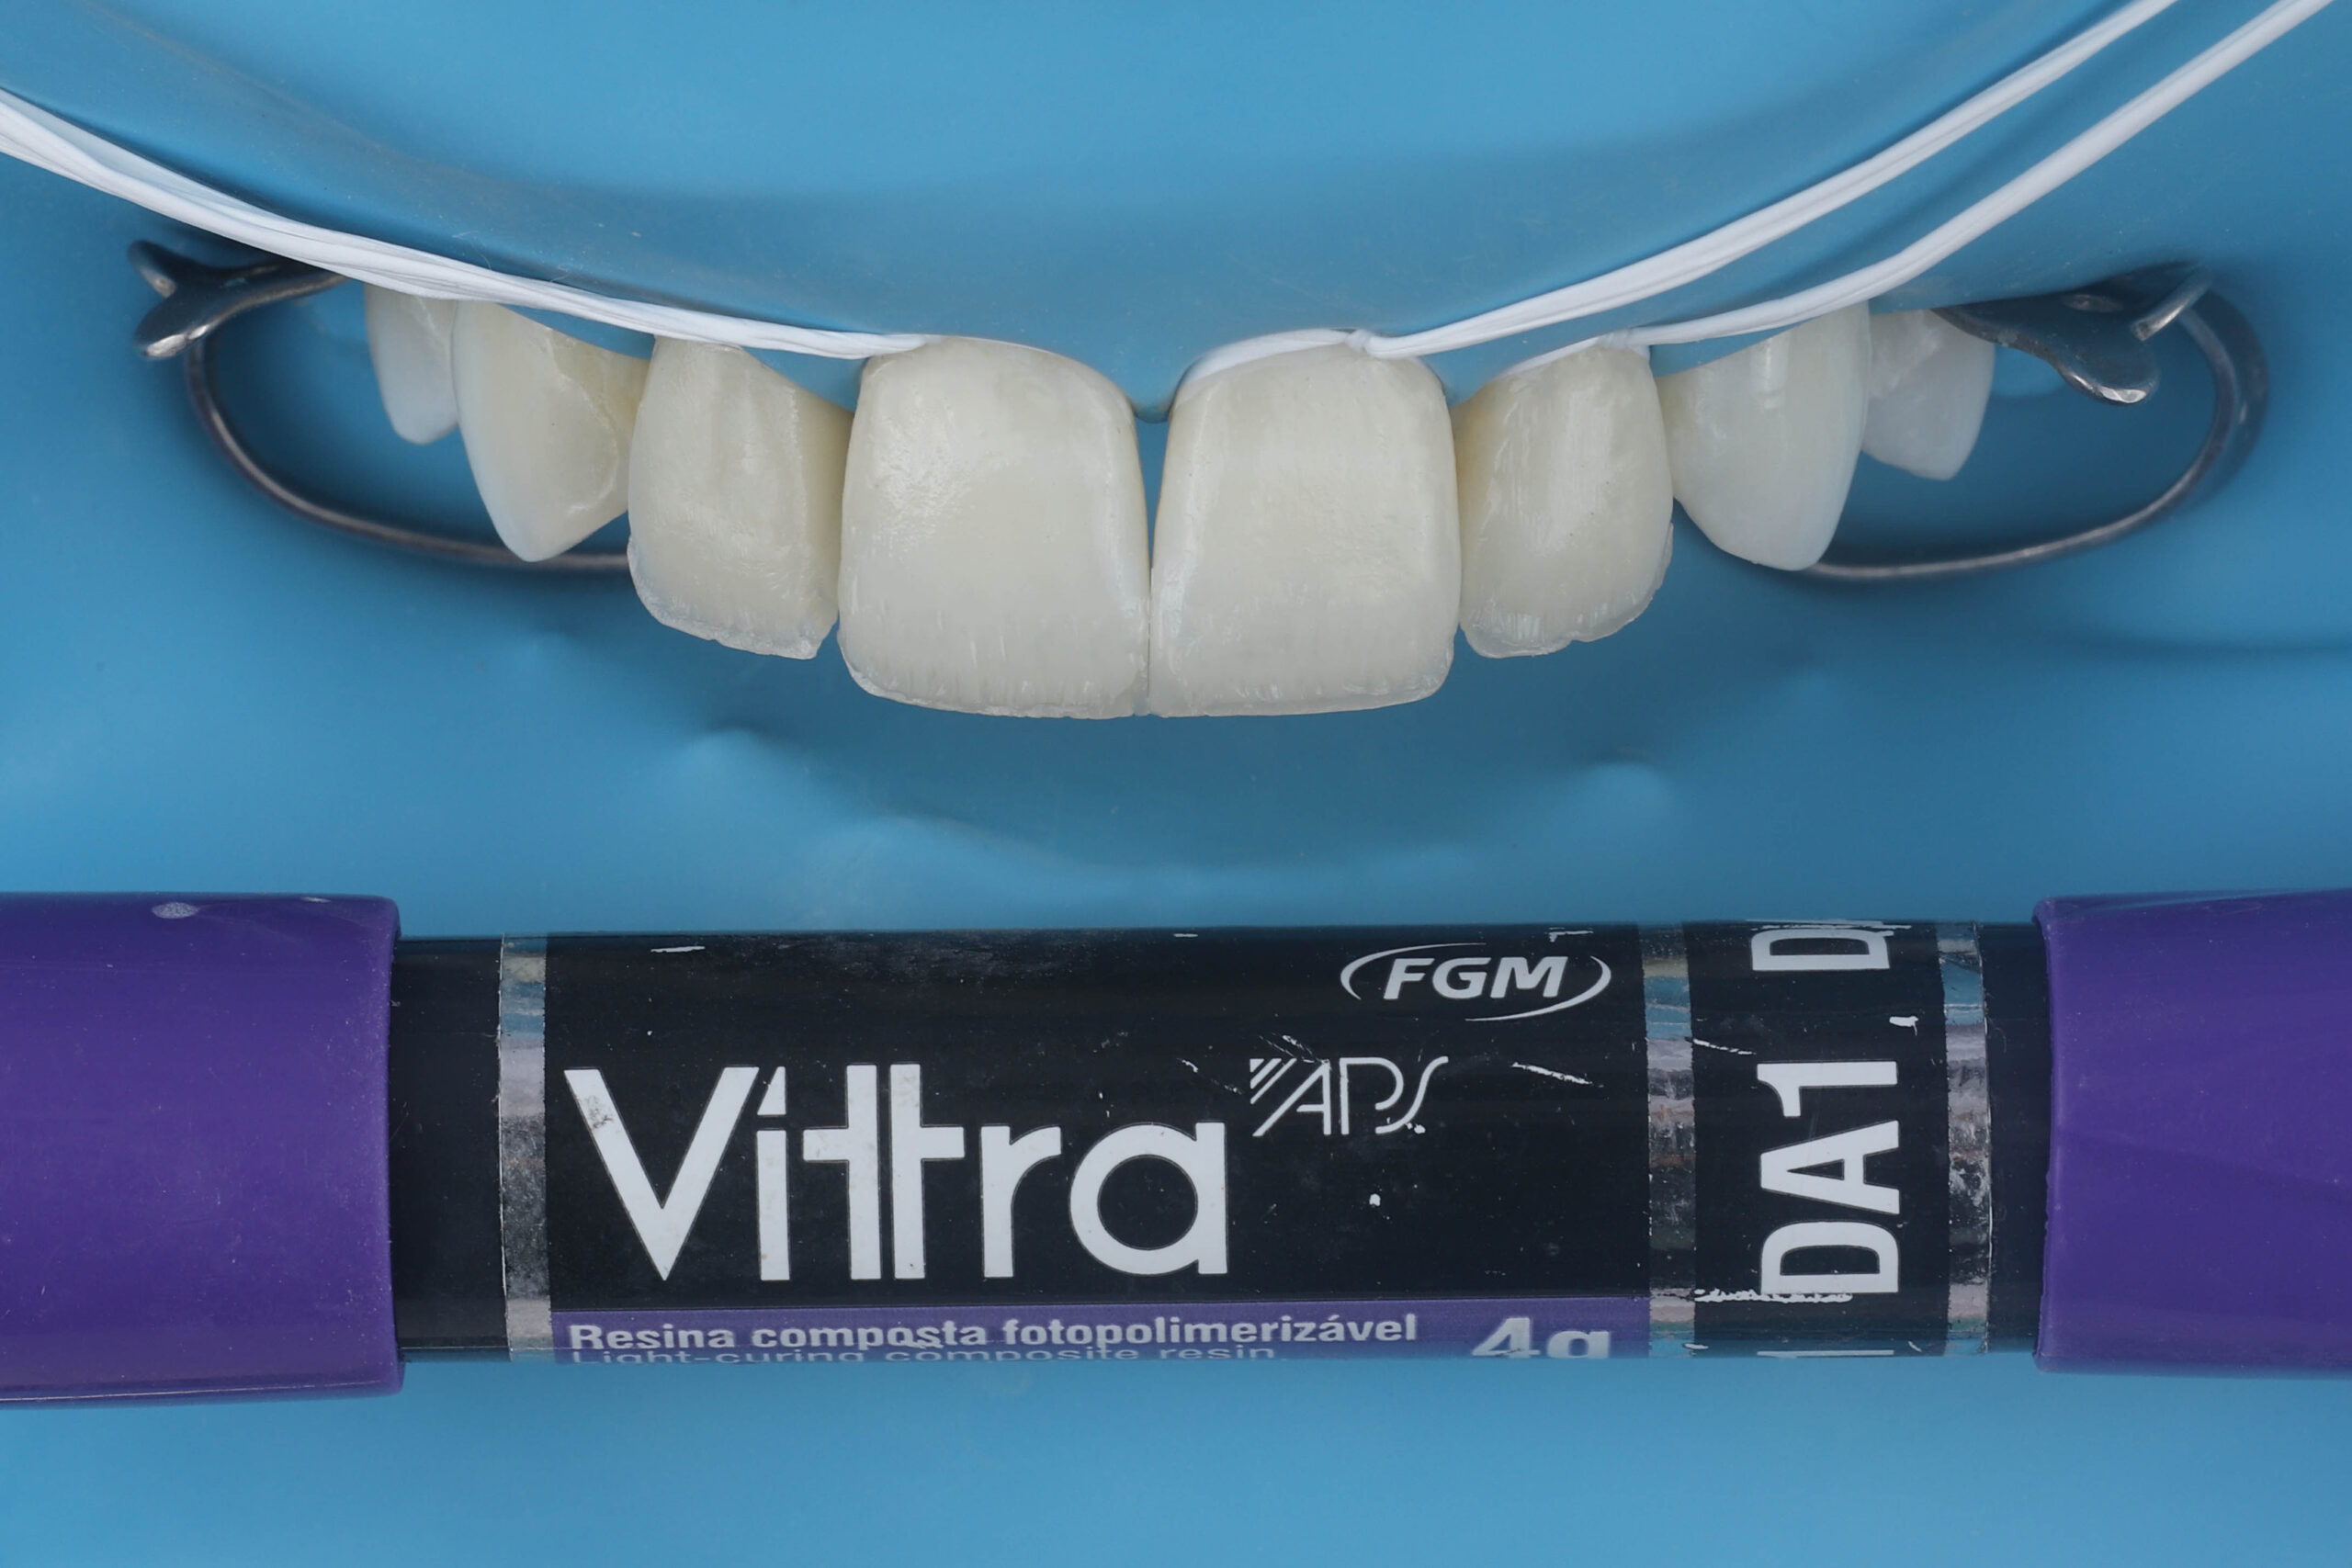 Fig. 5 - Confecção da dentina e dos mamelos com resina Vittra DA1.